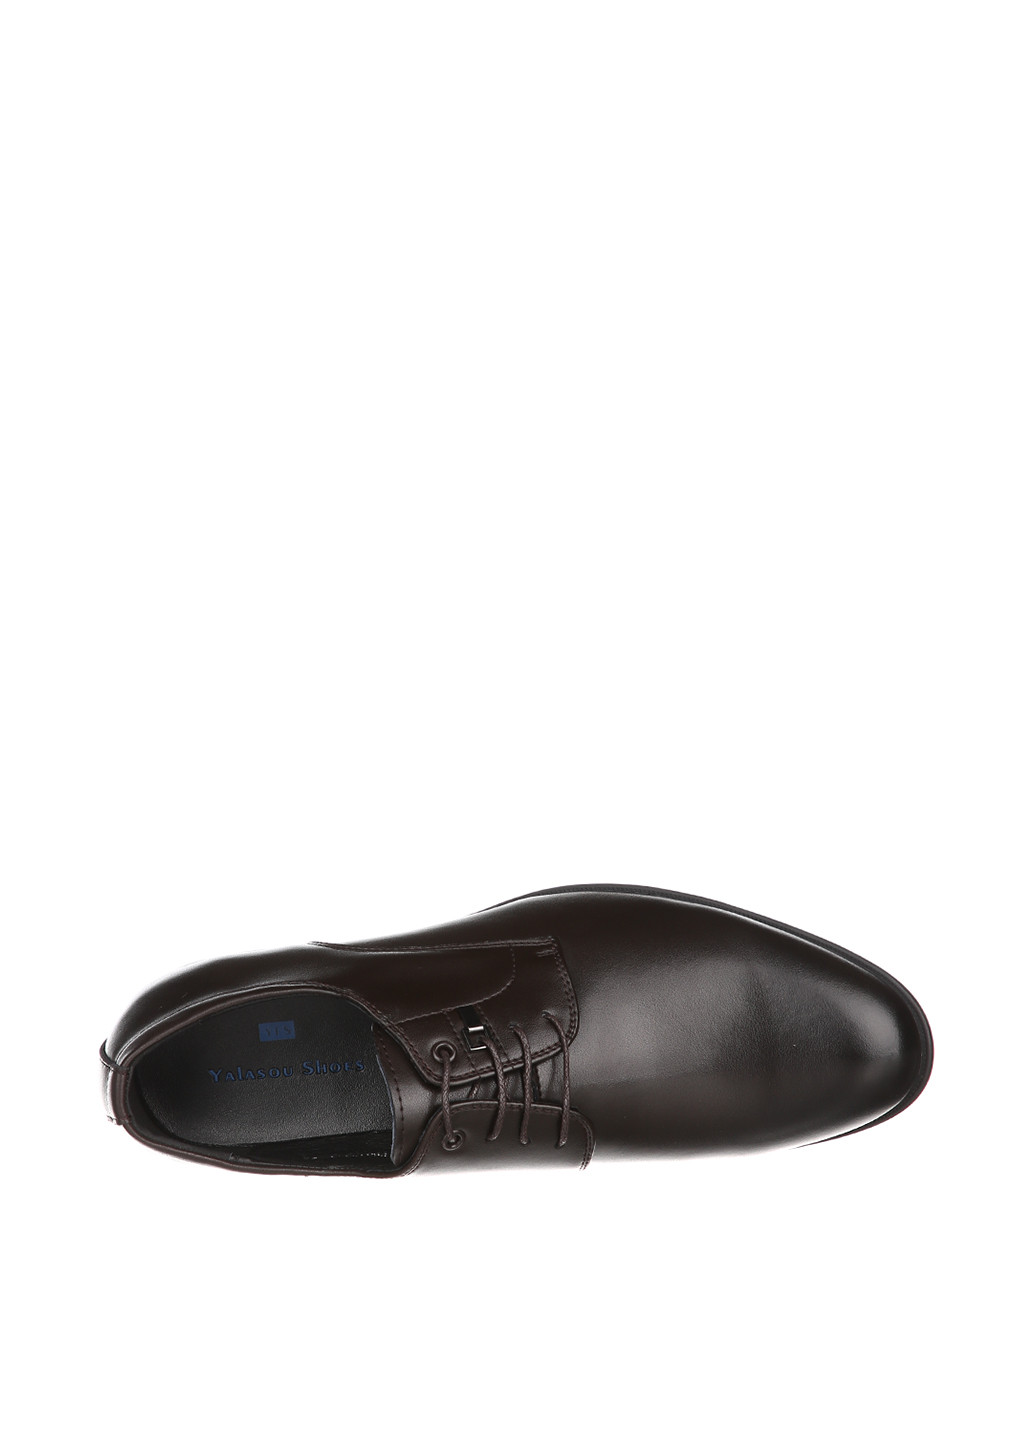 Темно-коричневые классические туфли Yalasou на шнурках